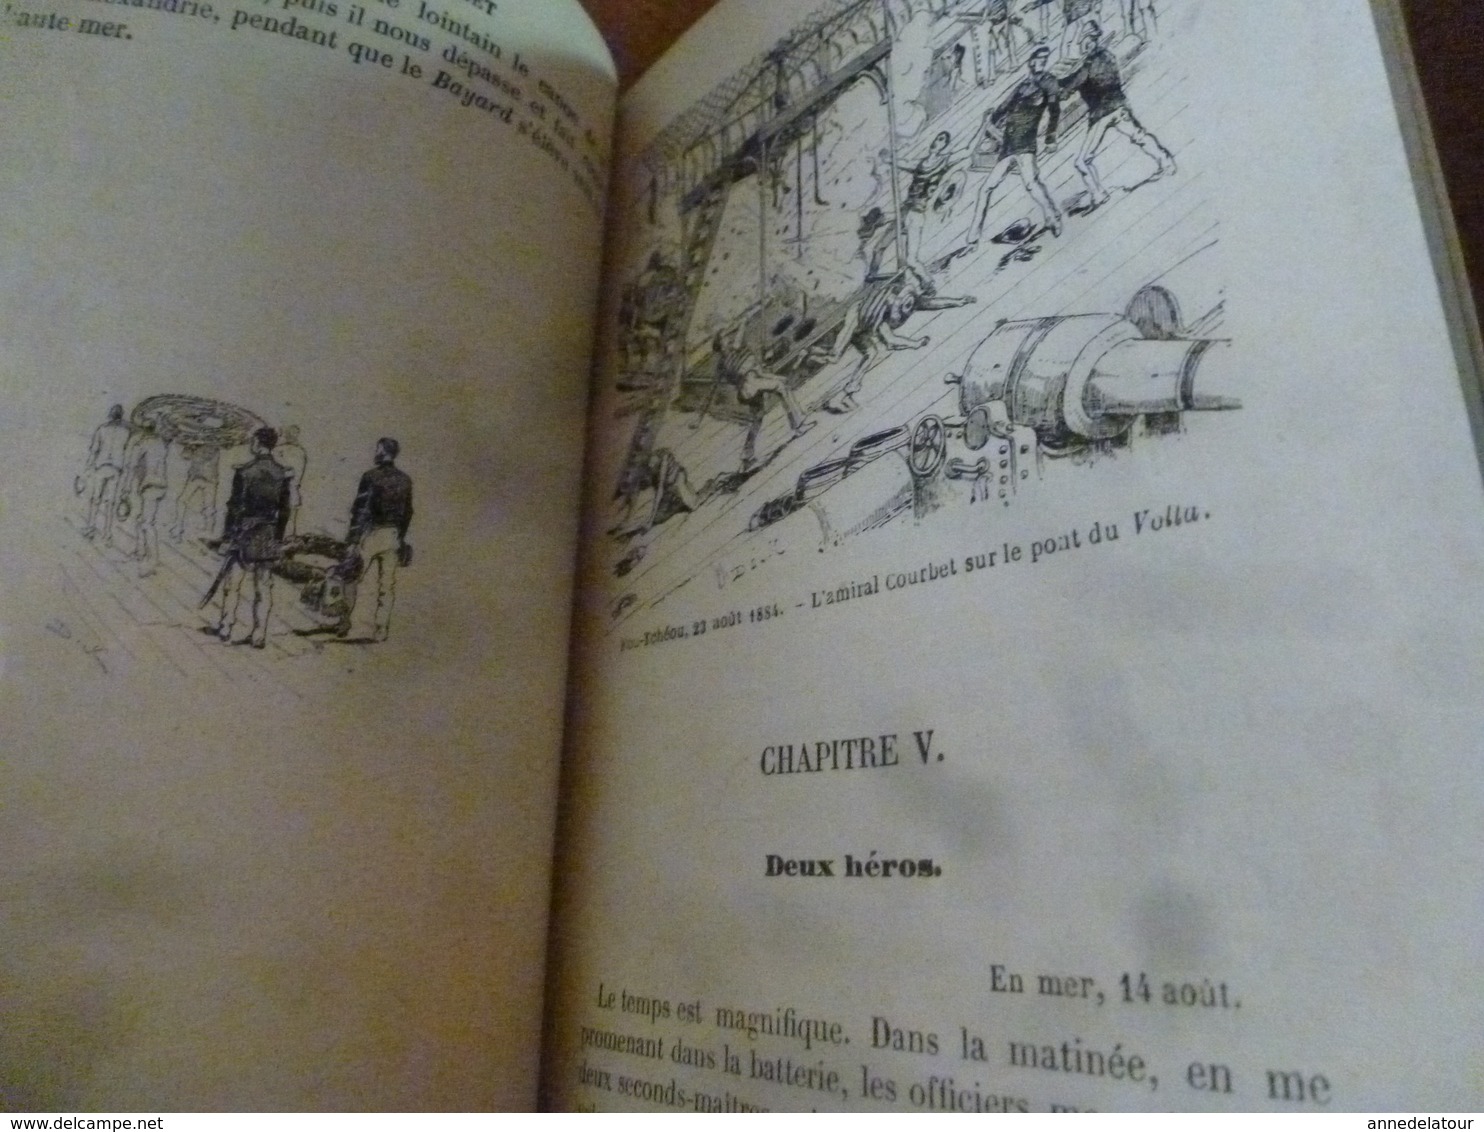 1889 L'AMIRAL Courbet et LE BAYARD,récits,souvenirs historiques, illust. de 40 dessins de l'auteur,(par Dick de Lonlay)